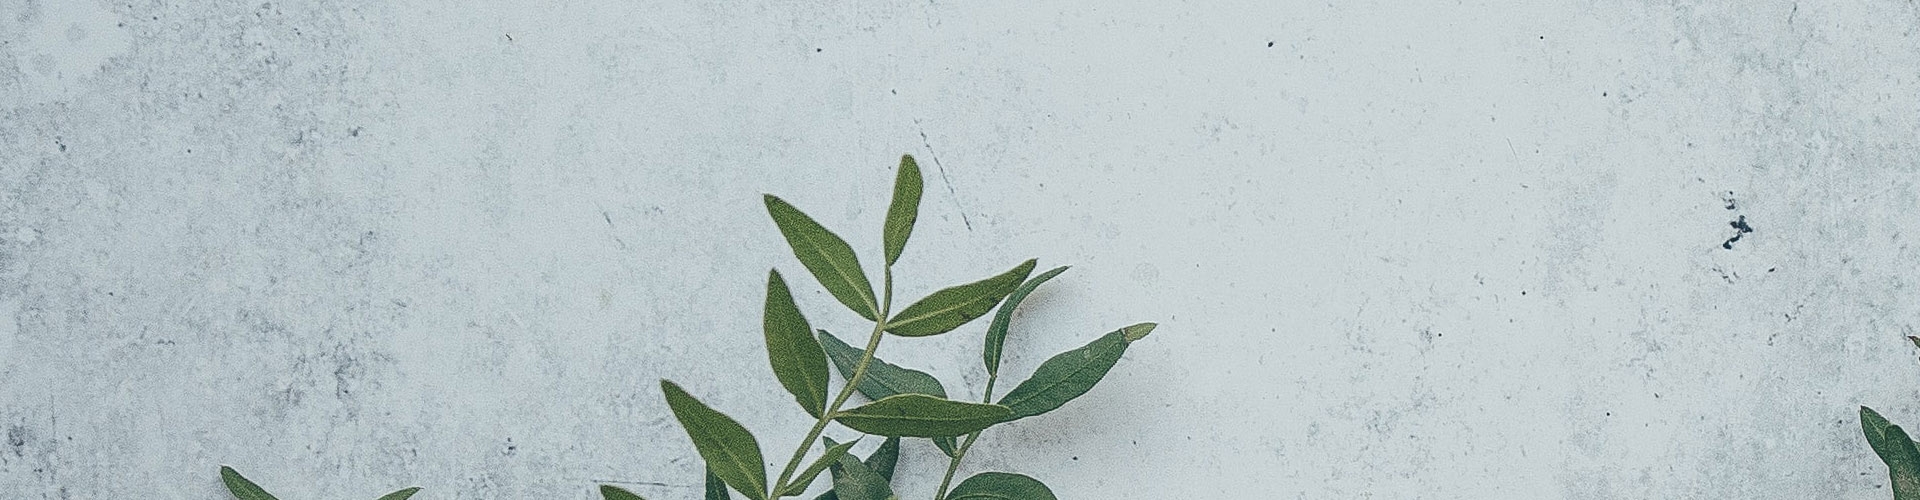 Bilden visar en grönskande kvist placerad en betongskiva, illustrerande sidan med artiklar om betong som ett naturligt material på webbplatsen.